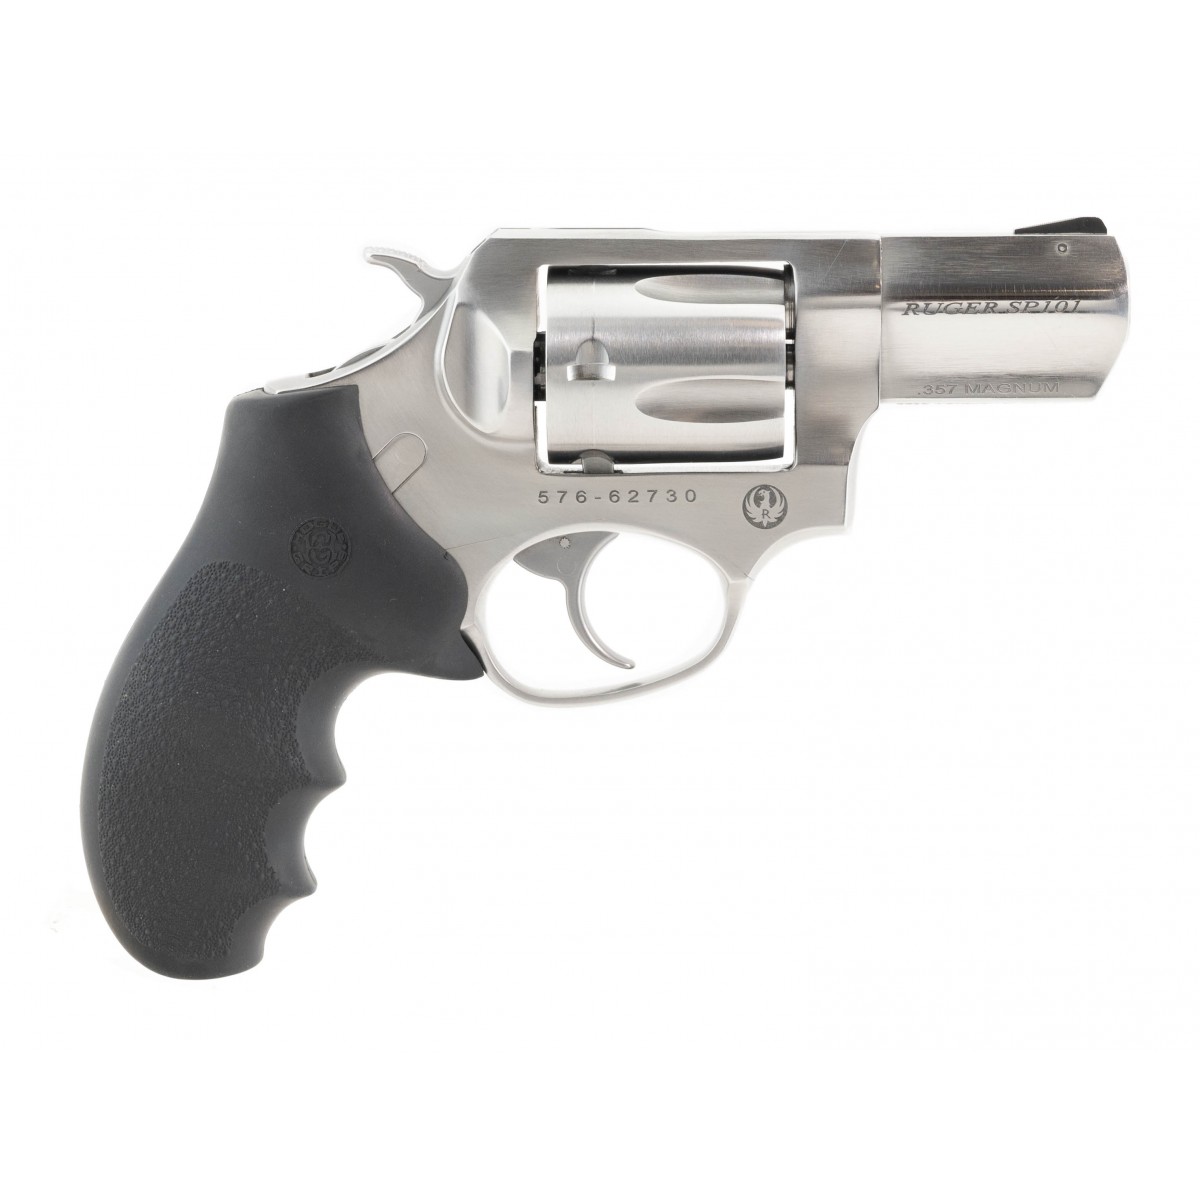 Ruger SP101 .357 Magnum caliber pistol for sale.